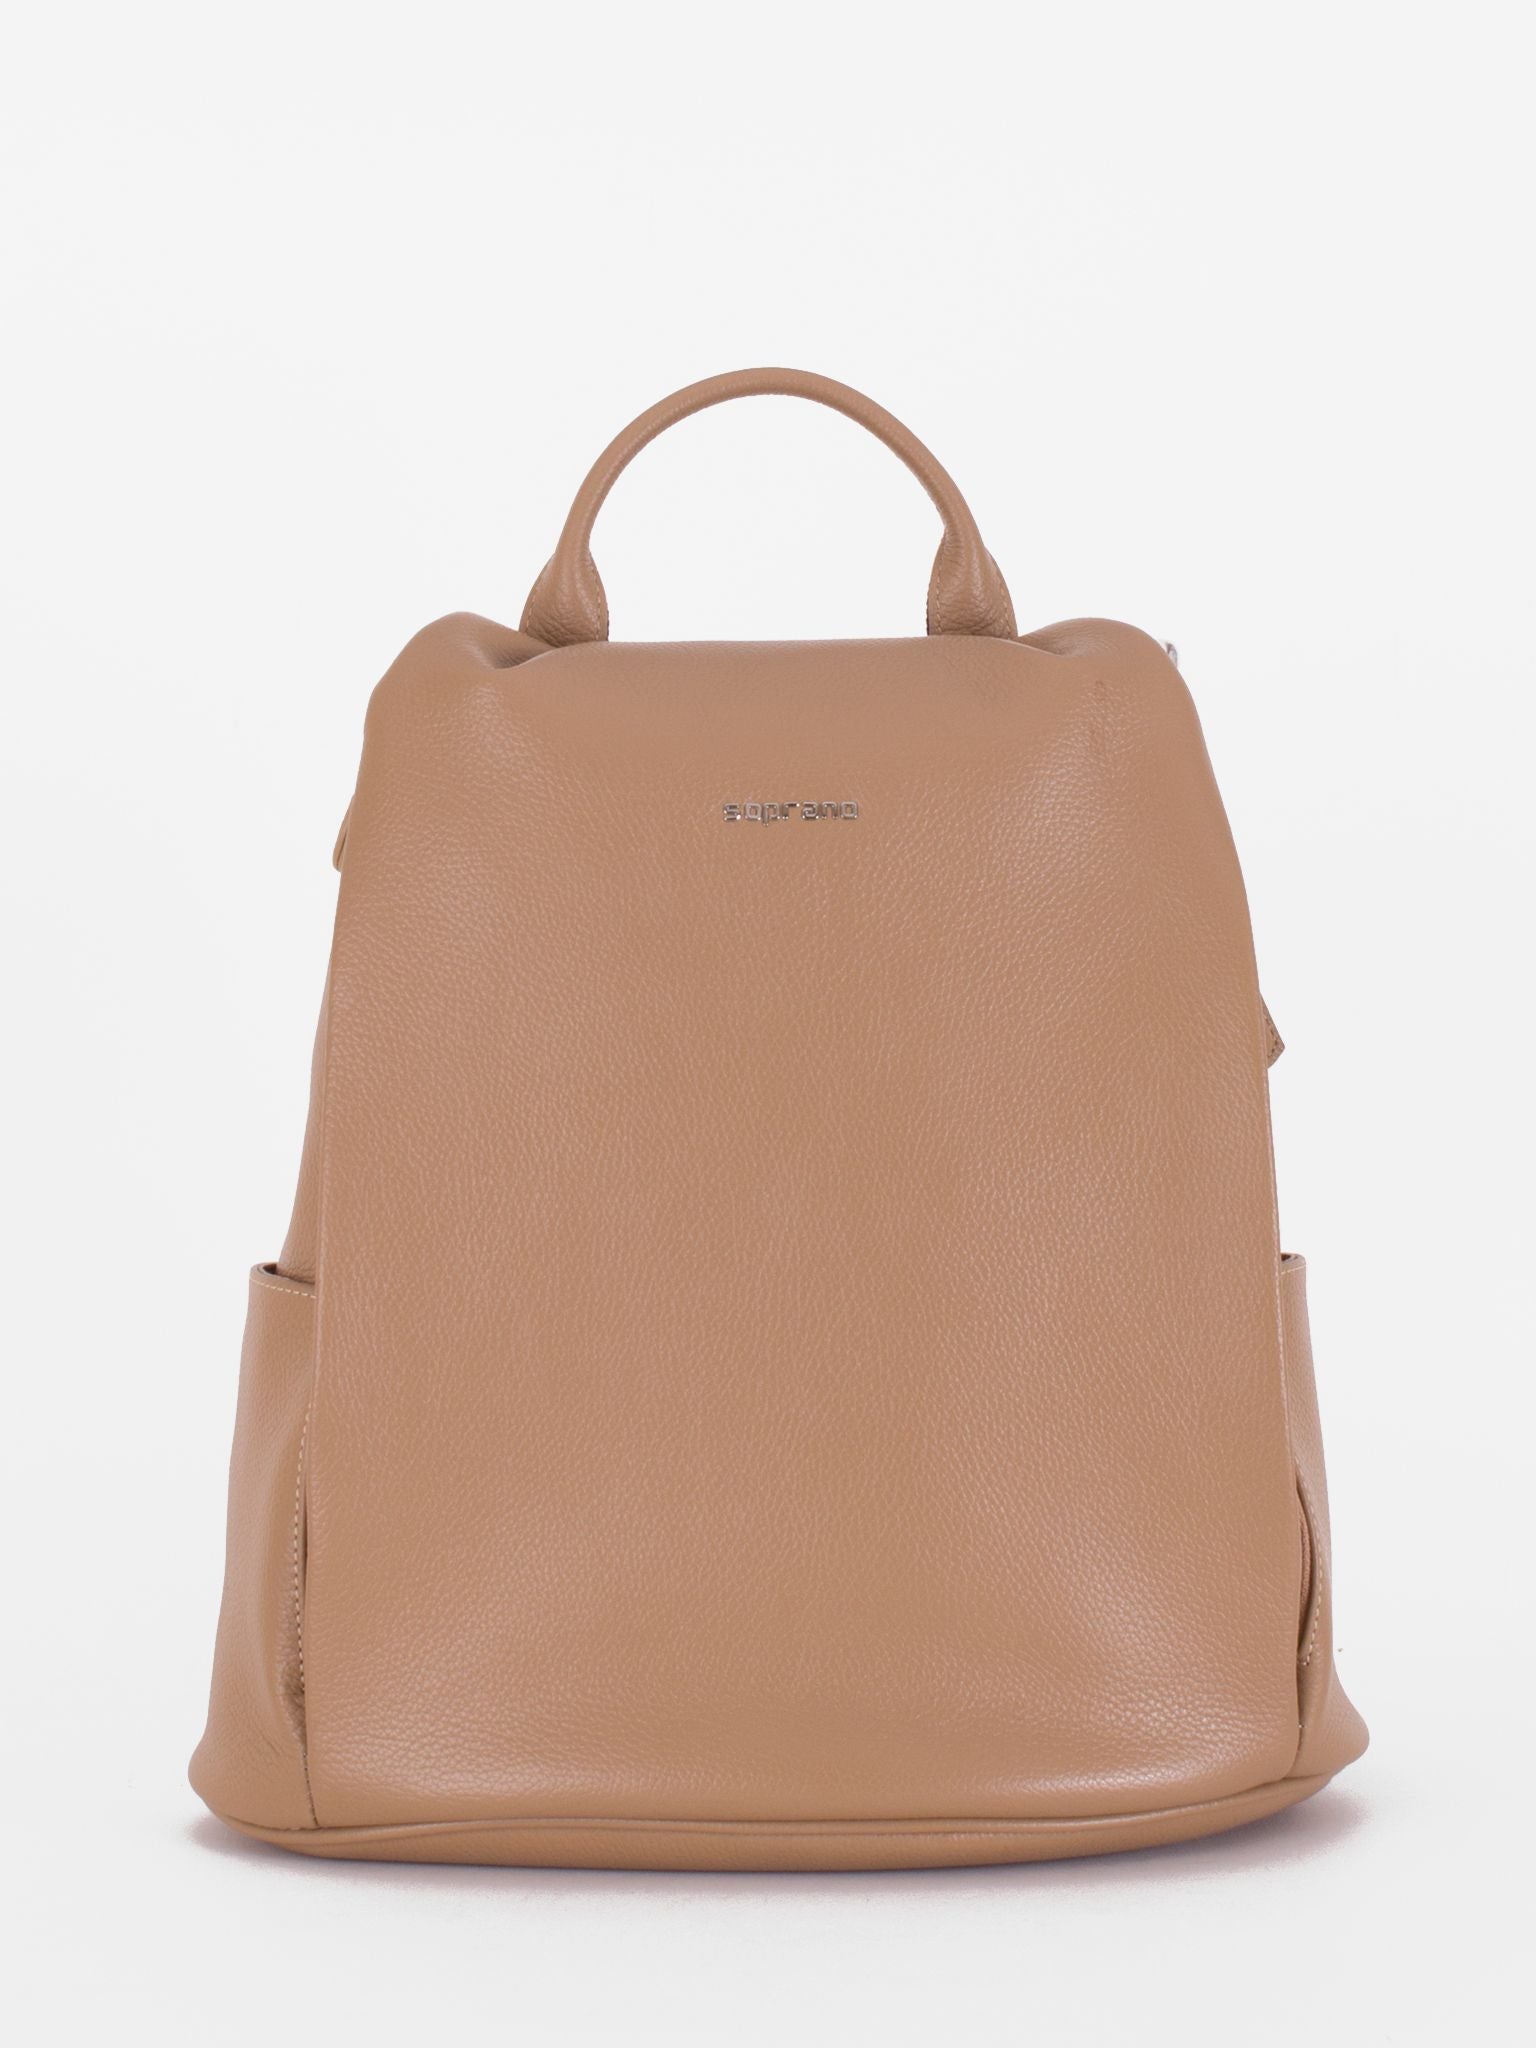 Eunice Safety Backpack/Shoulder Bag Convertible